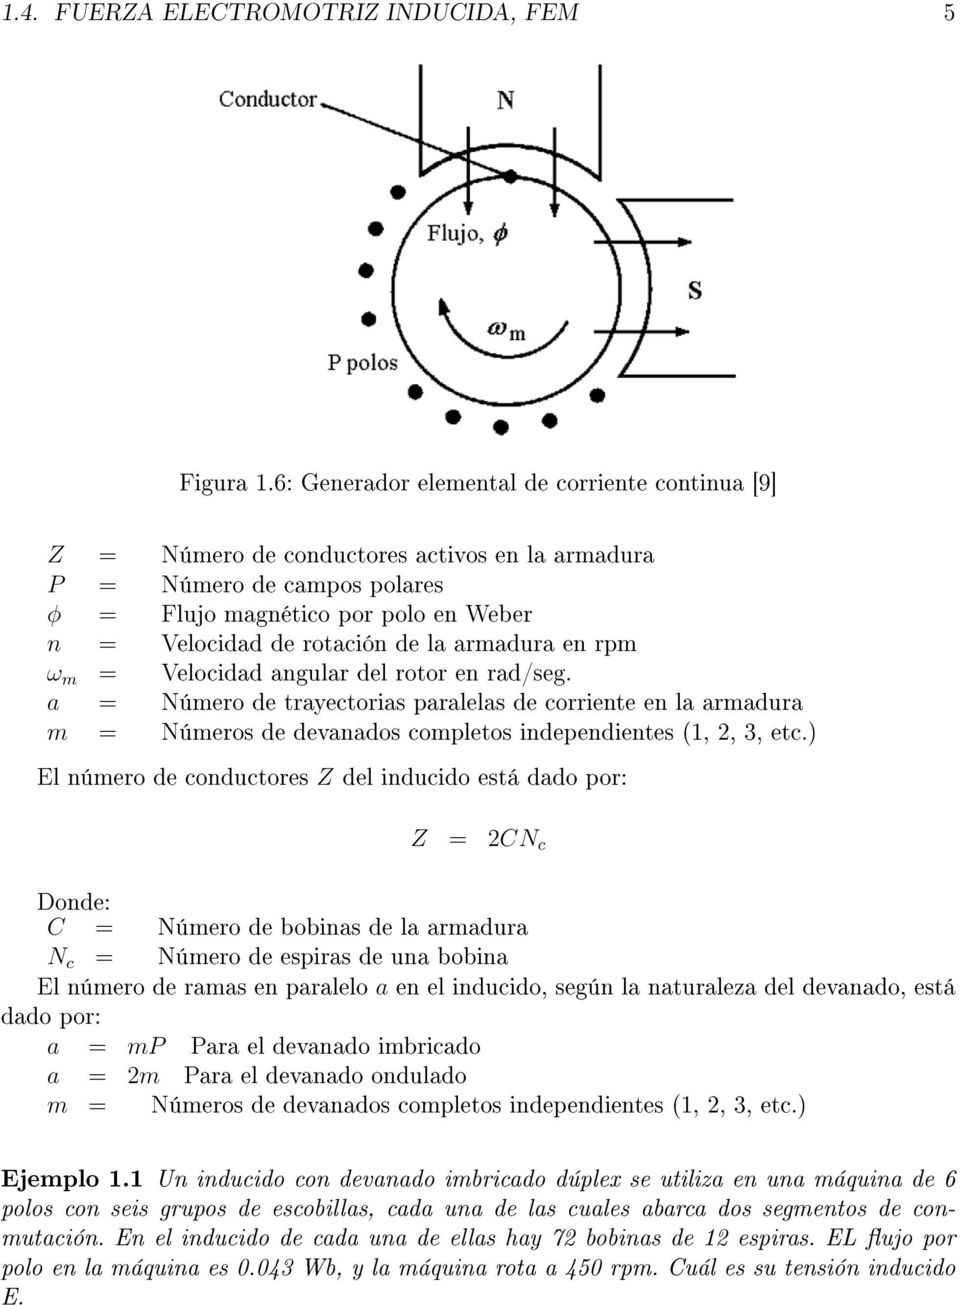 armadura en rpm ω m = Velocidad angular del rotor en rad/seg. a = Número de trayectorias paralelas de corriente en la armadura m = Números de devanados completos independientes (1, 2, 3, etc.